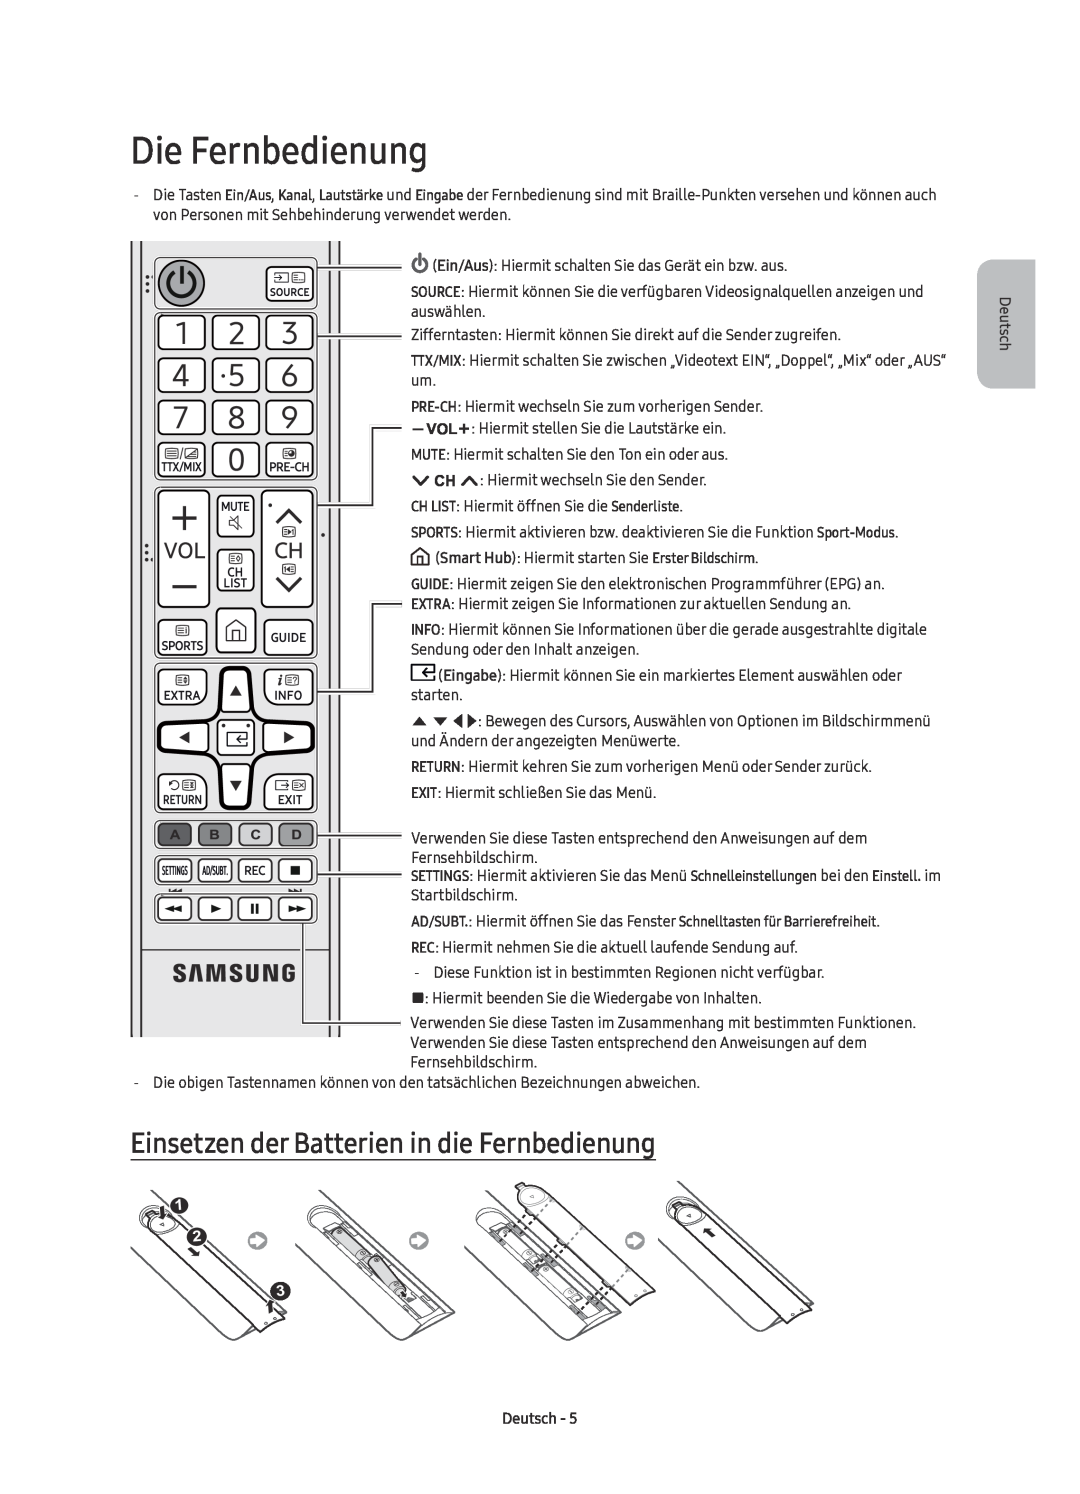 Samsung UE70KU6070UXZG, UE55KU6079UXZG manual Die Fernbedienung, Einsetzen der Batterien in die Fernbedienung, Deutsch 